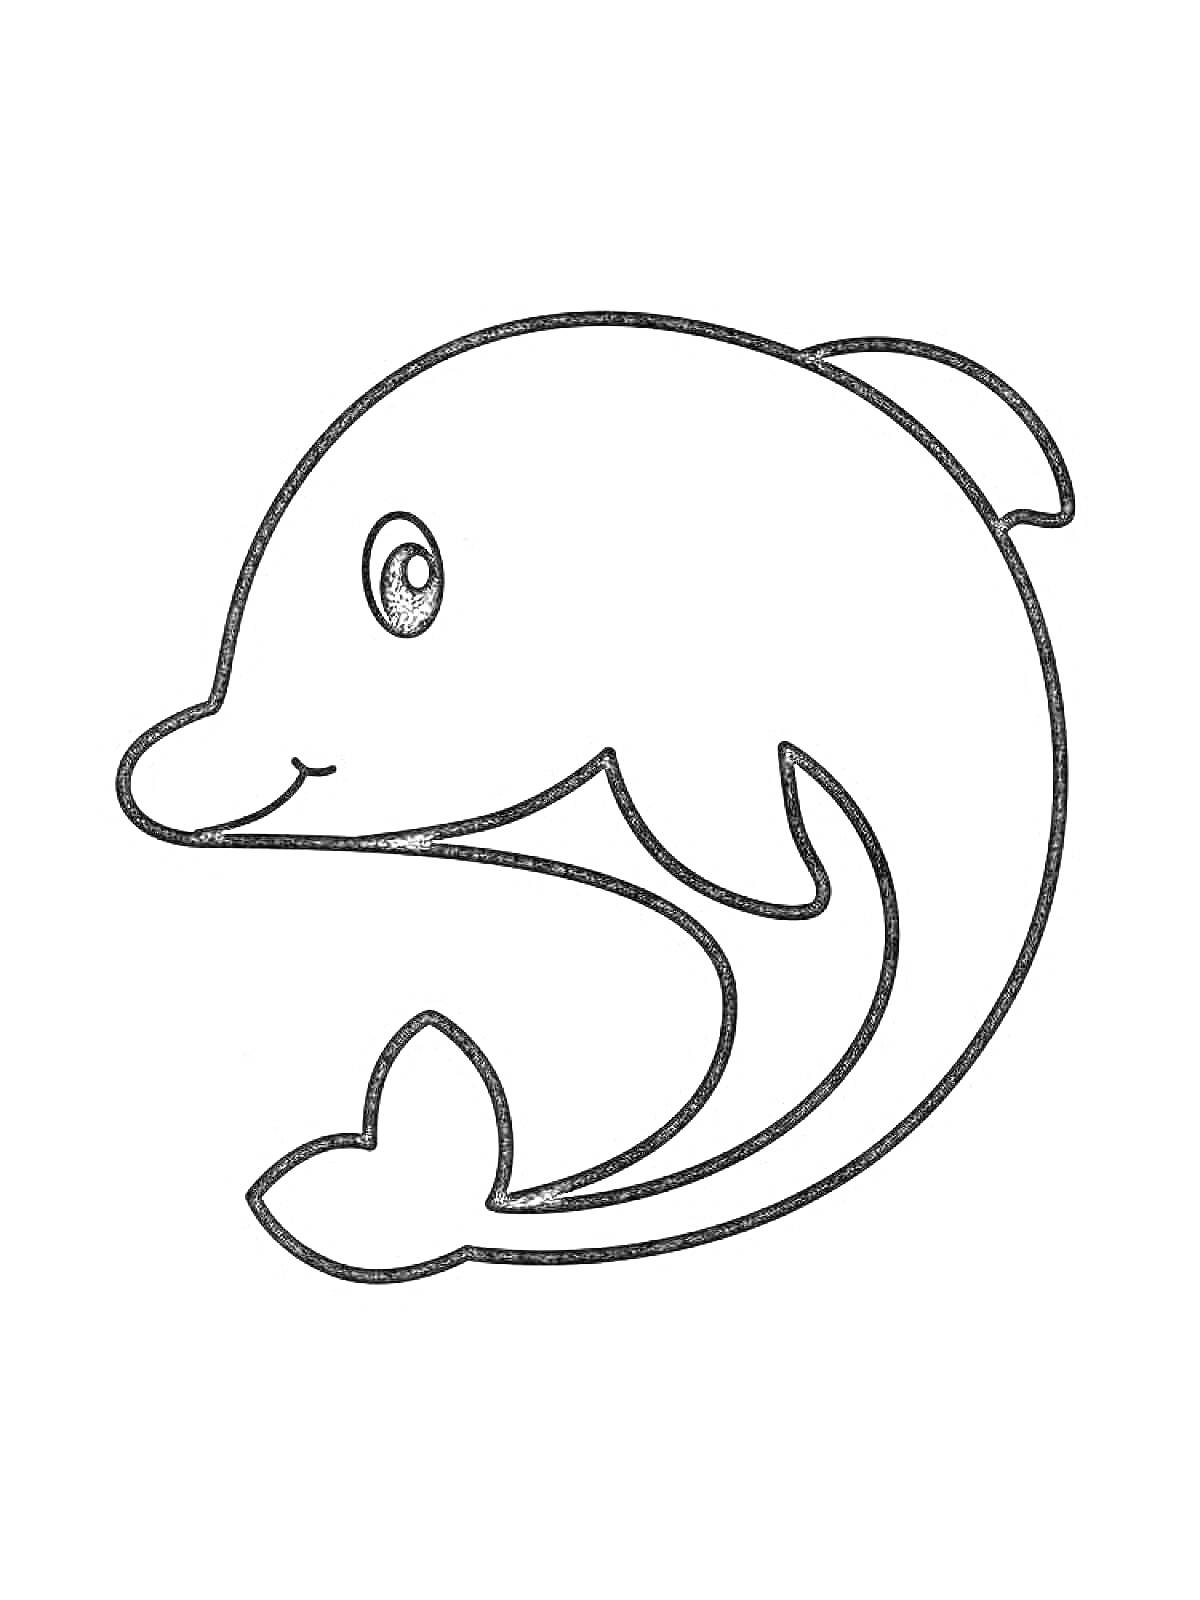 Раскраска Дельфин с хвостом и плавником, взгляд справа, простая иллюстрация для раскрашивания